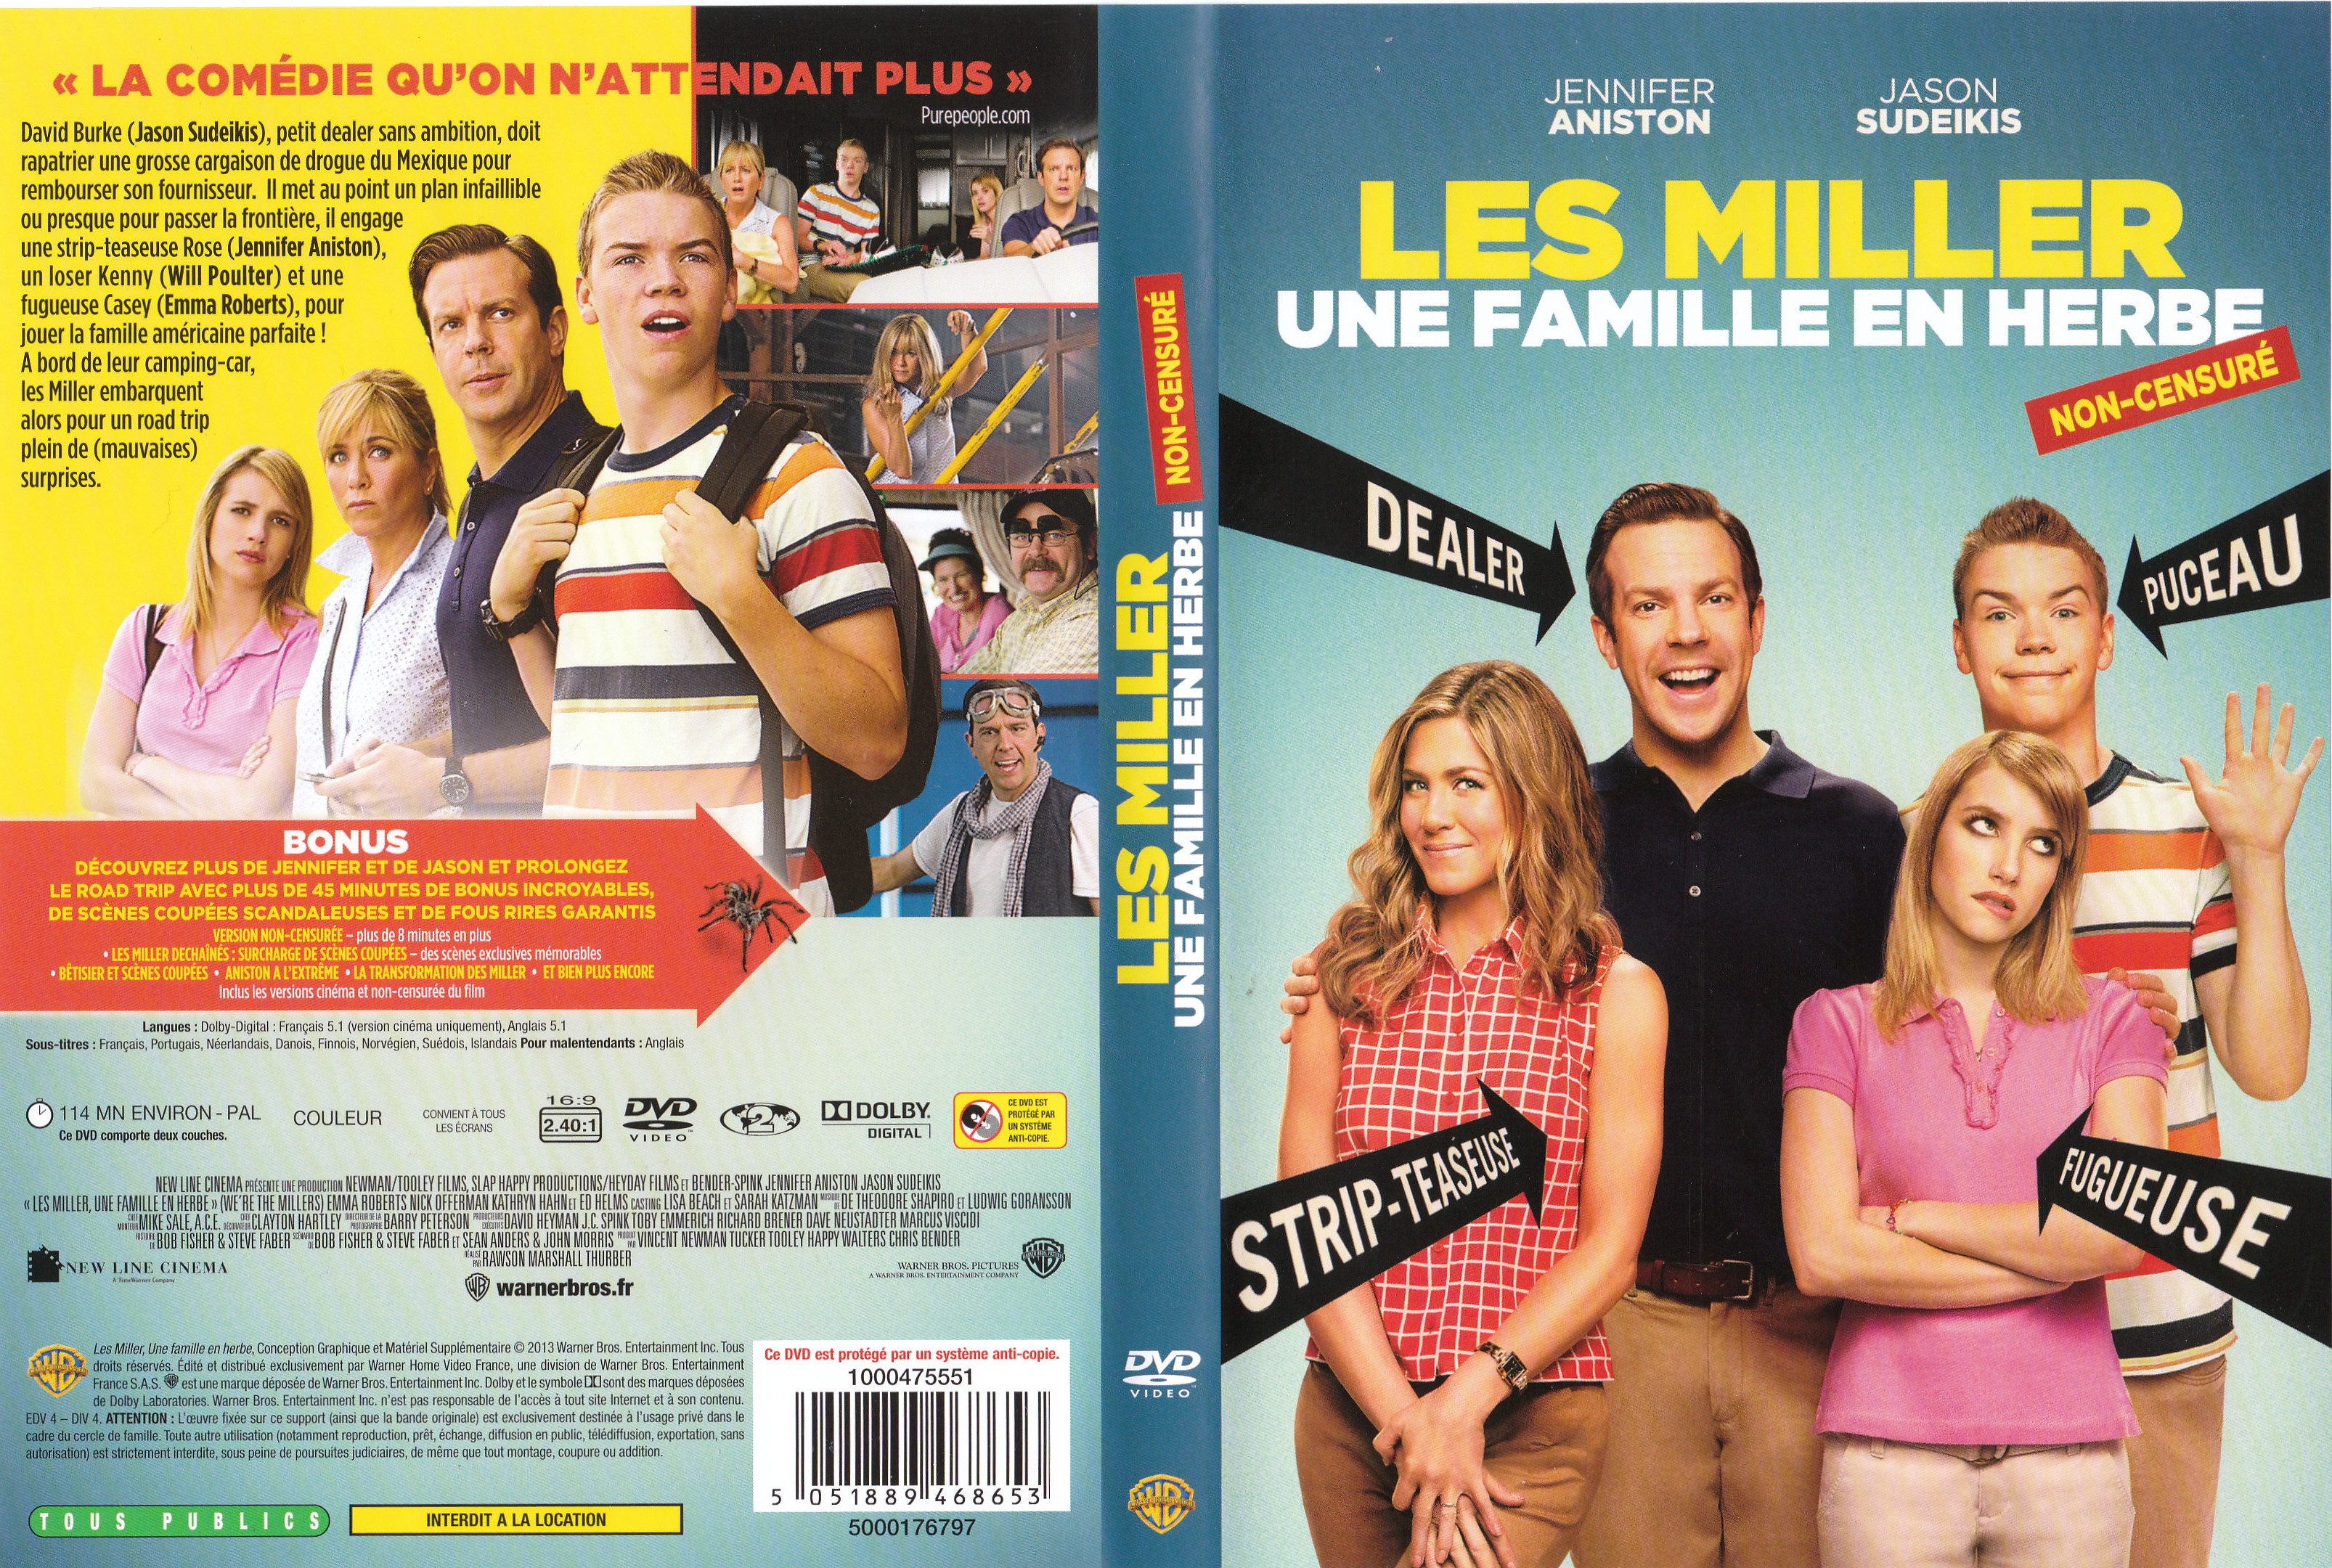 Jaquette DVD Les Miller, une famille en herbe v2